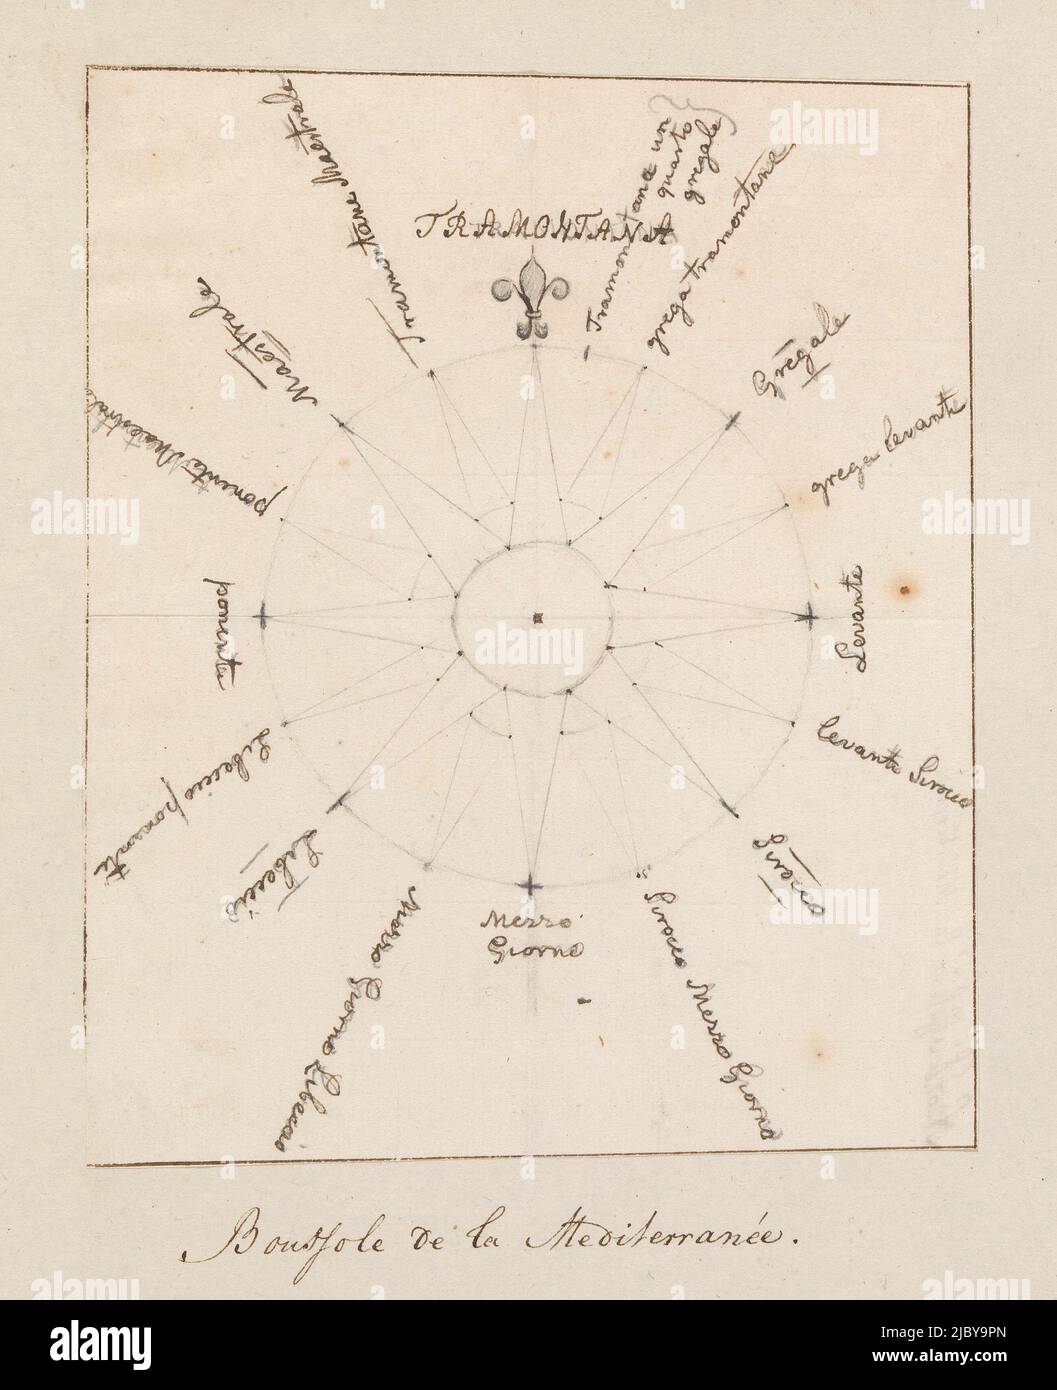 Kompass des Mittelmeerraums, anonym, 1778, Kompass des